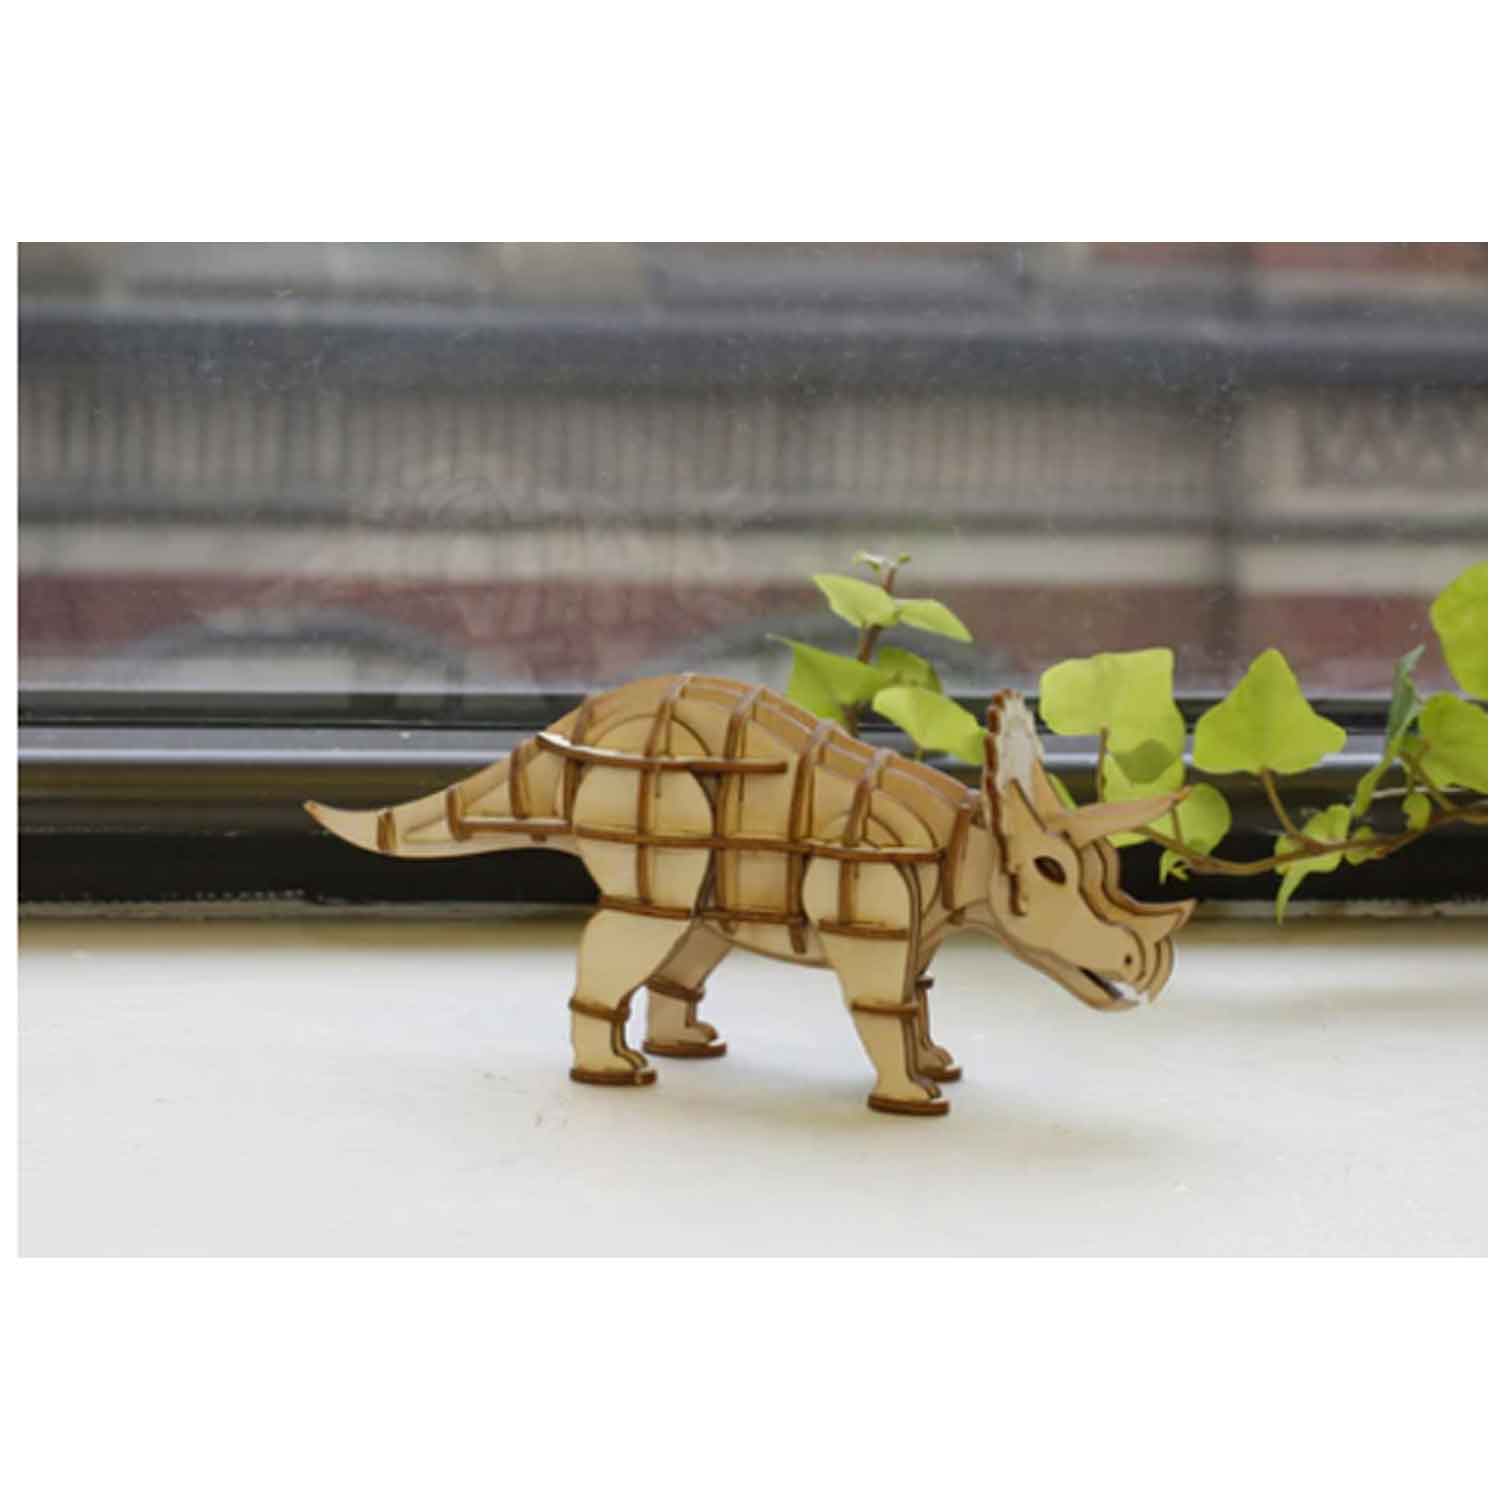 Dinosaurier-Triceratops-3D-Holzpuzzle-v-Kikkerland-berlindeluxe-dinosurier-holz-fenster